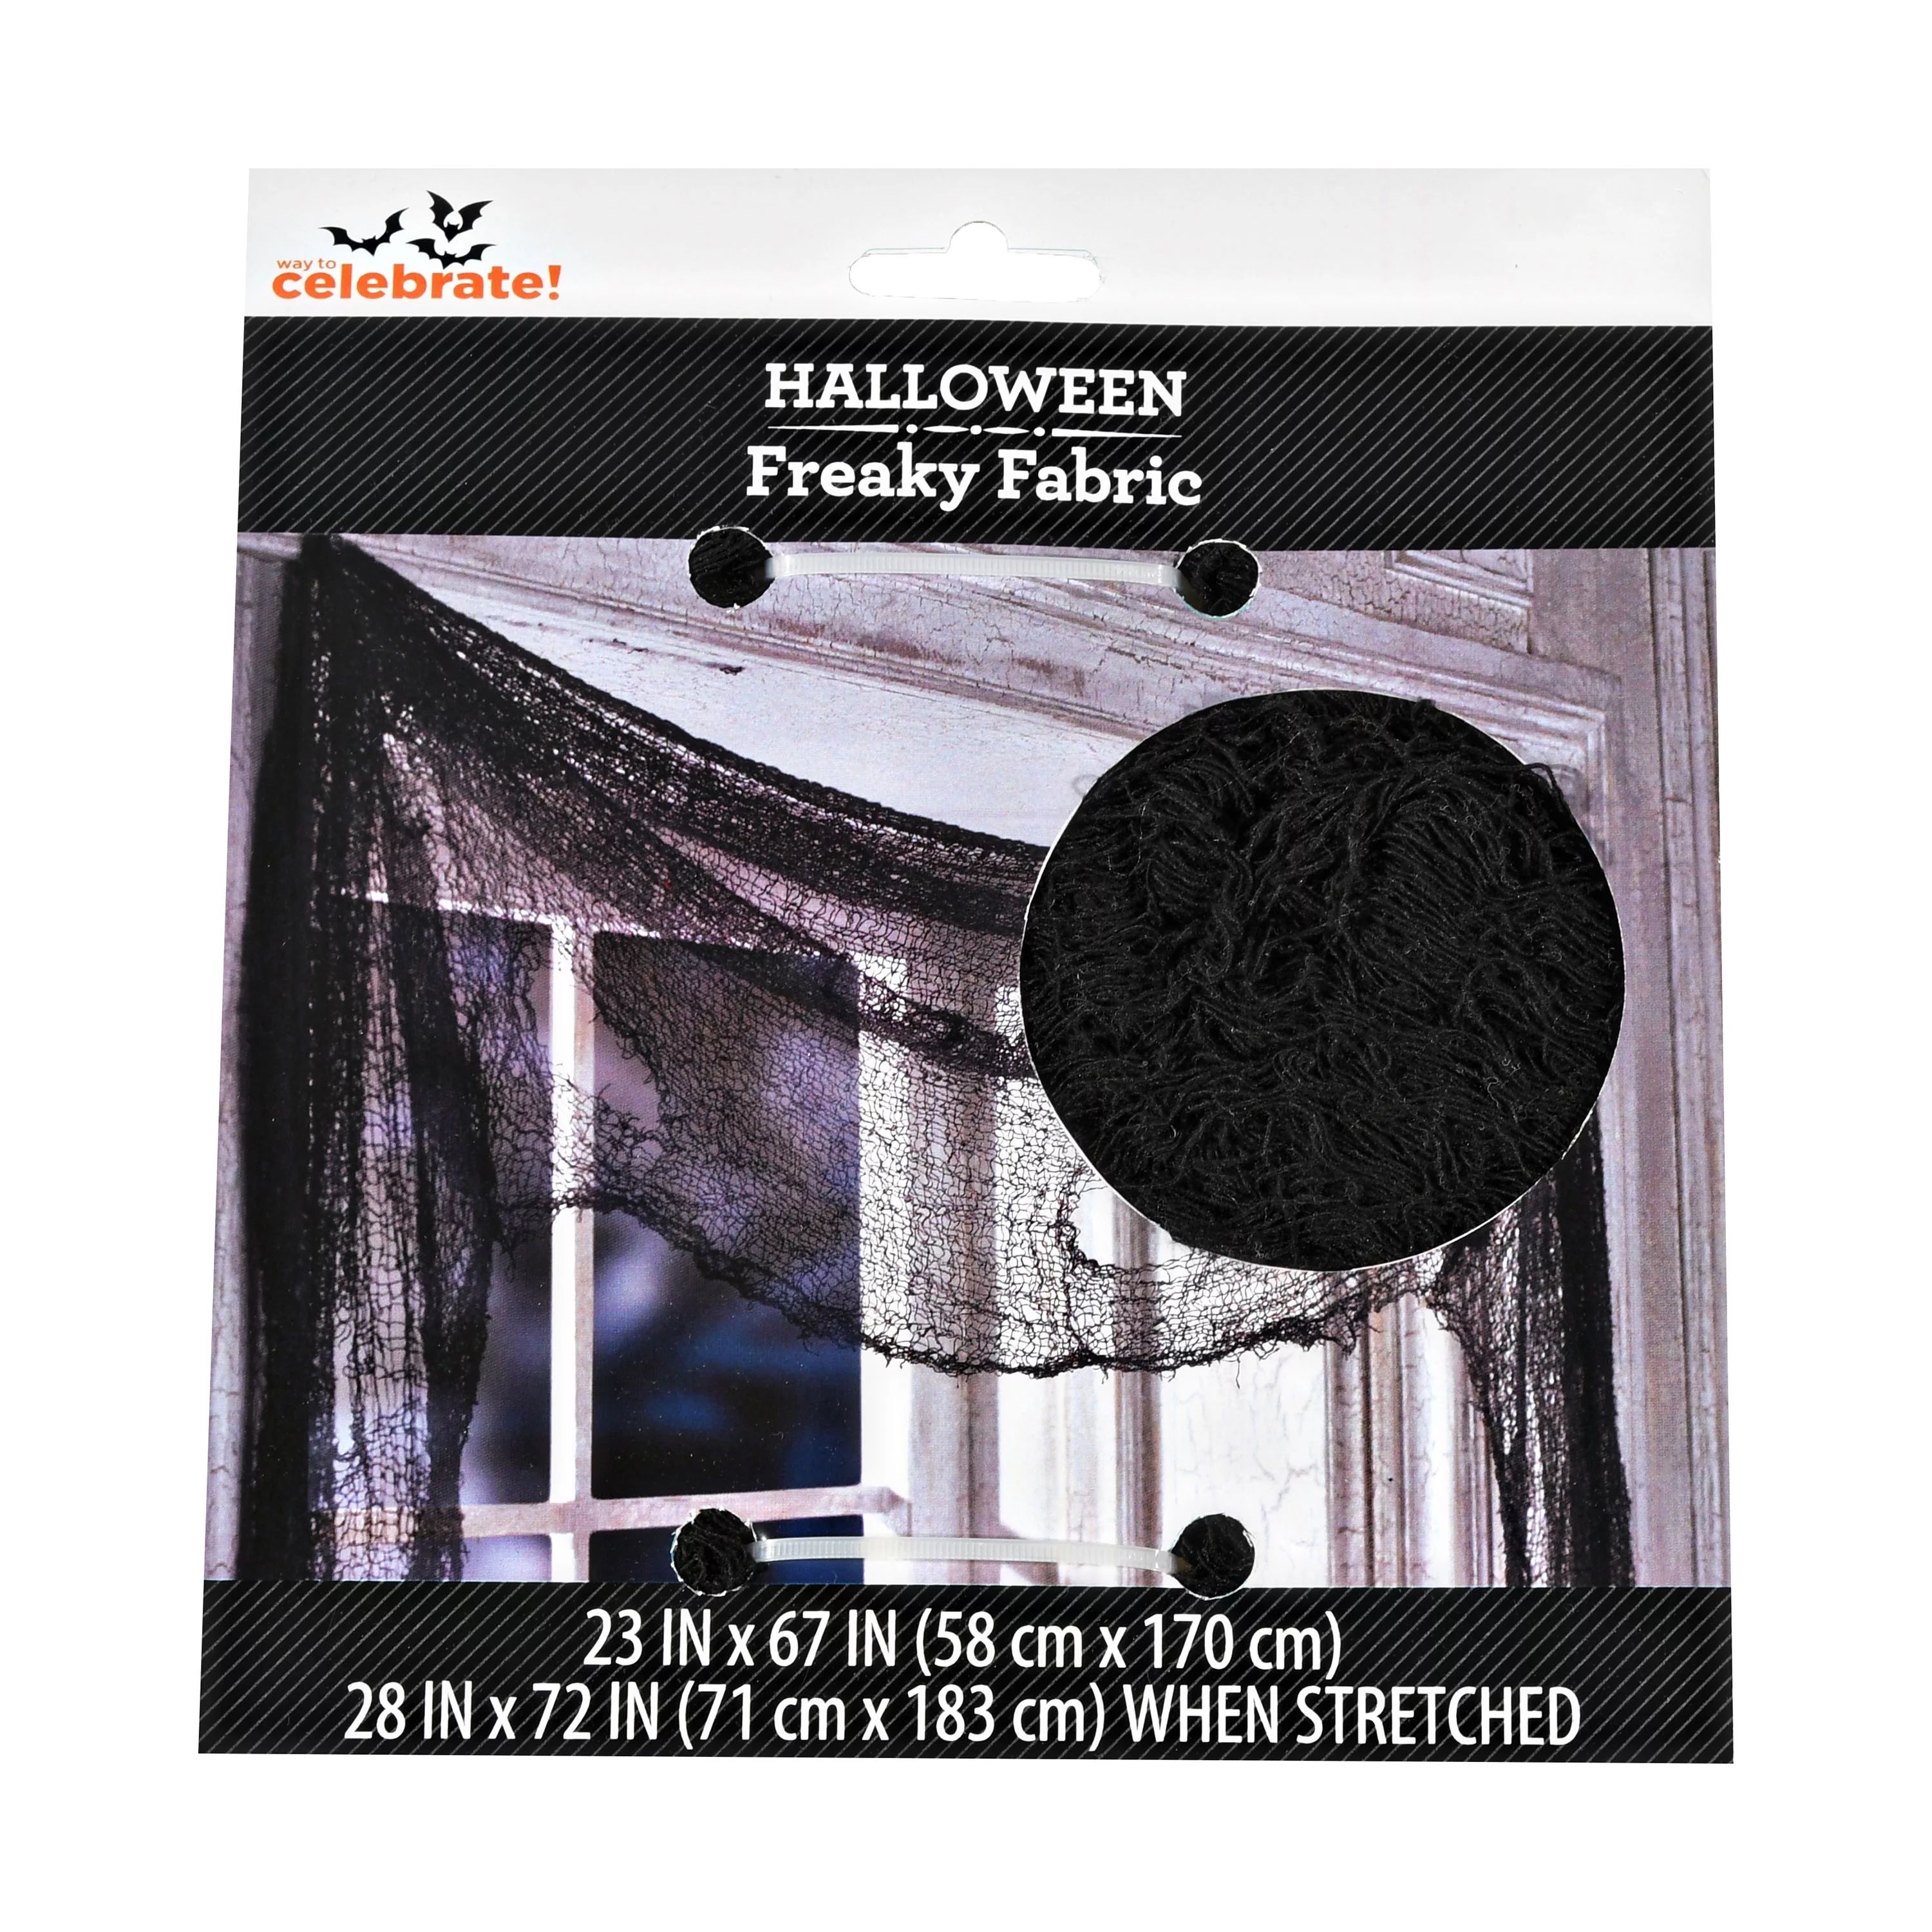 Way To Celebrate Halloween Freaky Fabric Decor, Black, Indoor Or Outdoor | Walmart (US)